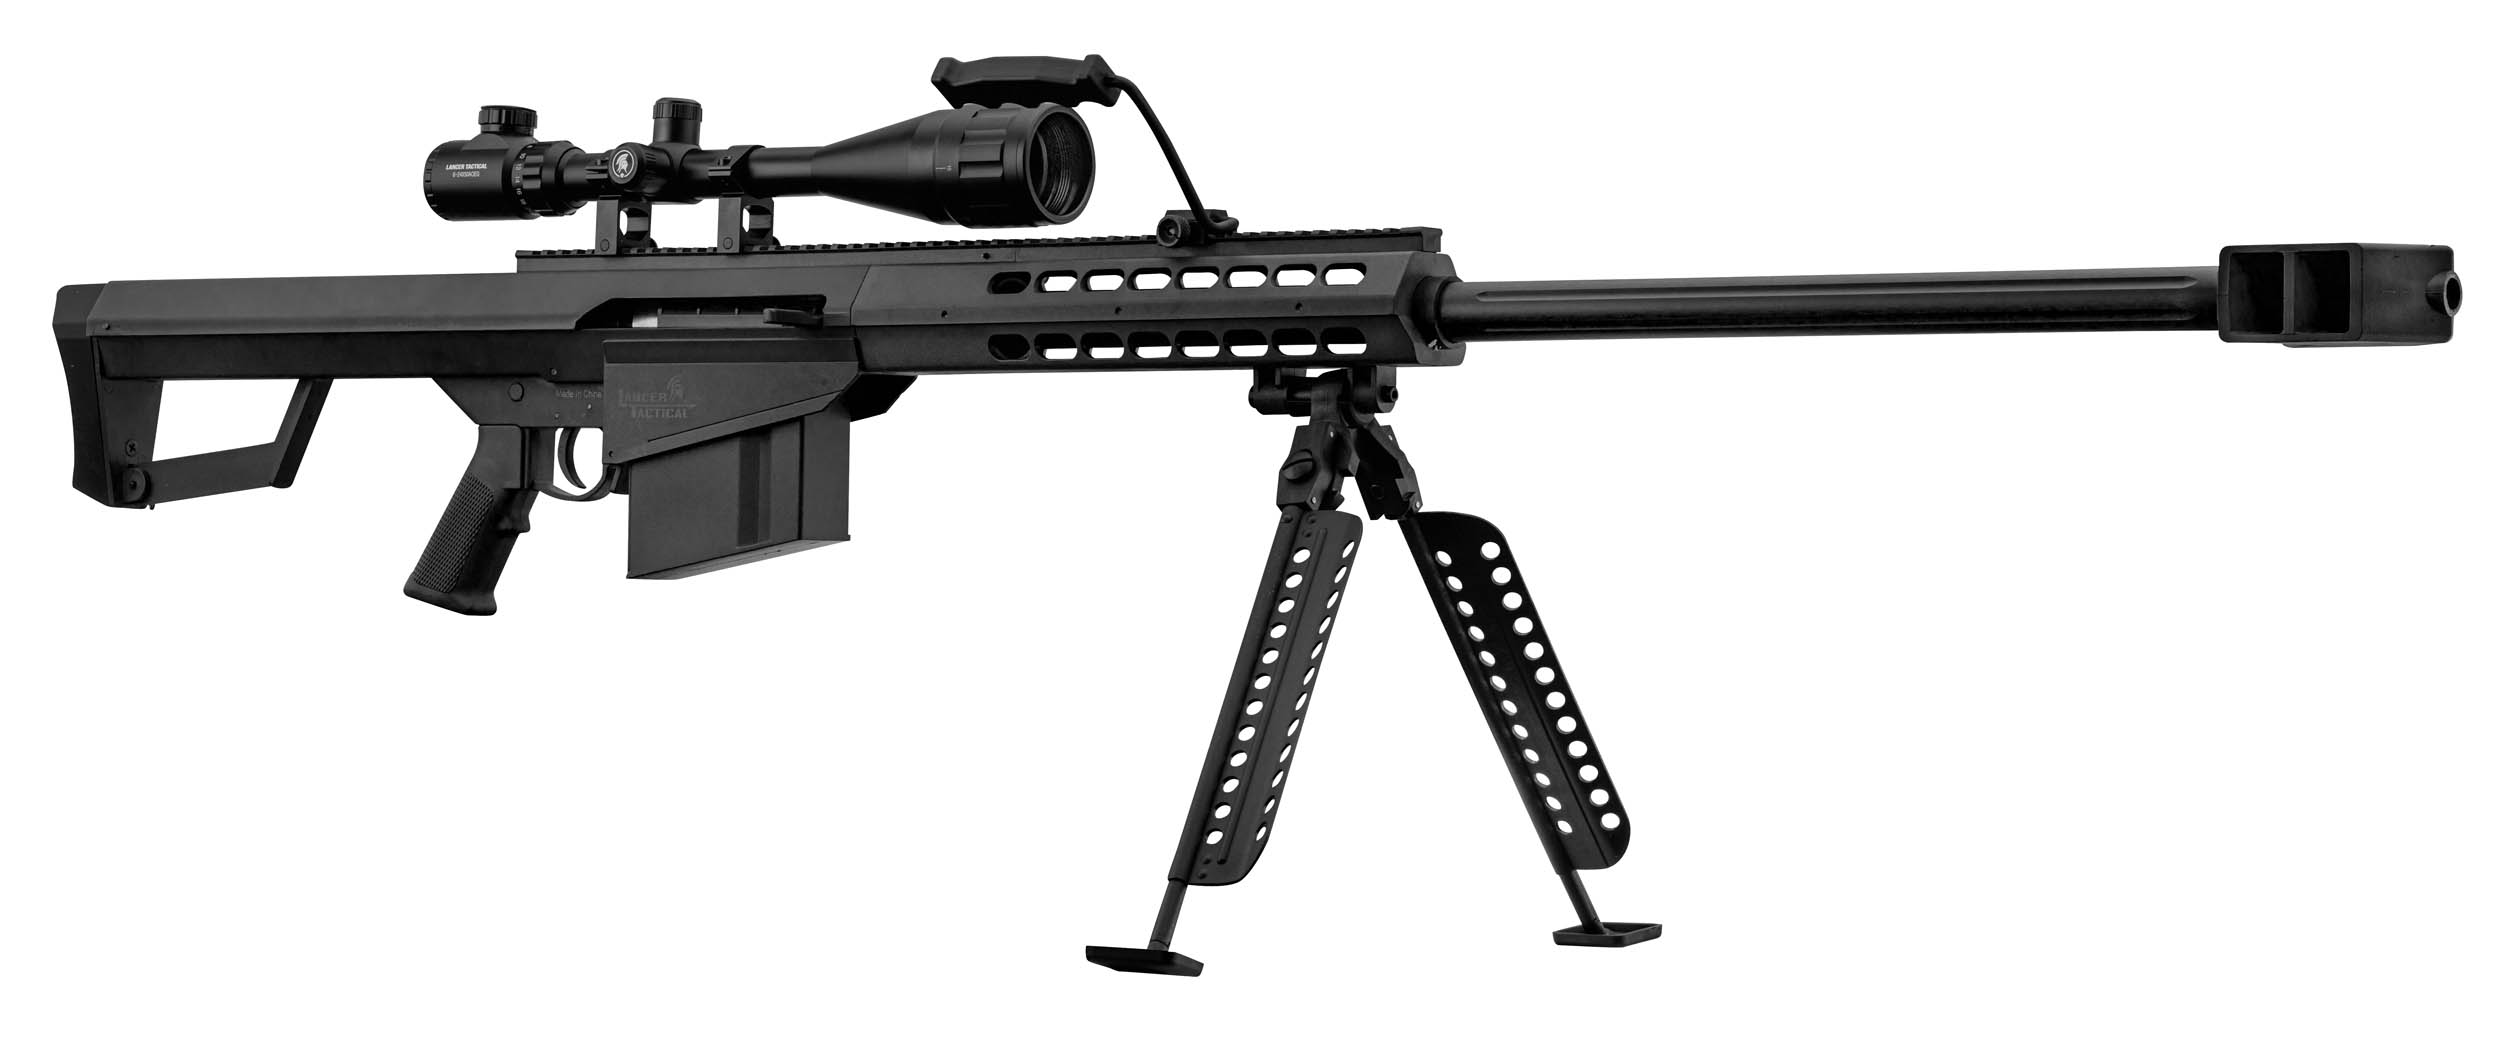 PCKLR3050-03 Pack Sniper LT-20 noir M82 1,5J + lunette + bi-pied + poignée - PCKLR3050